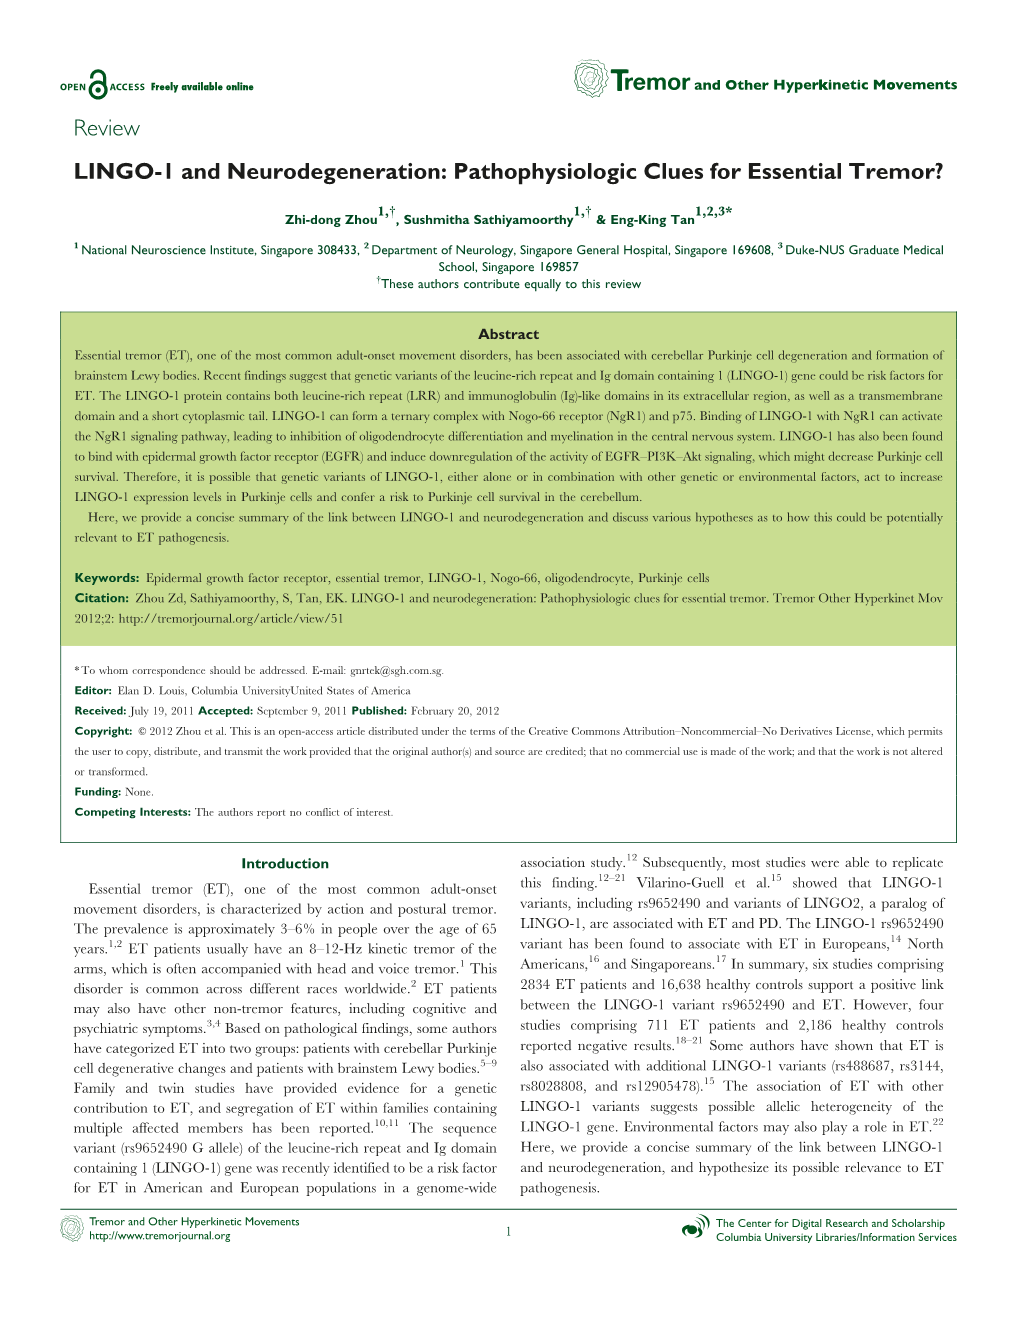 LINGO-1 and Neurodegeneration: Pathophysiologic Clues for Essential Tremor?